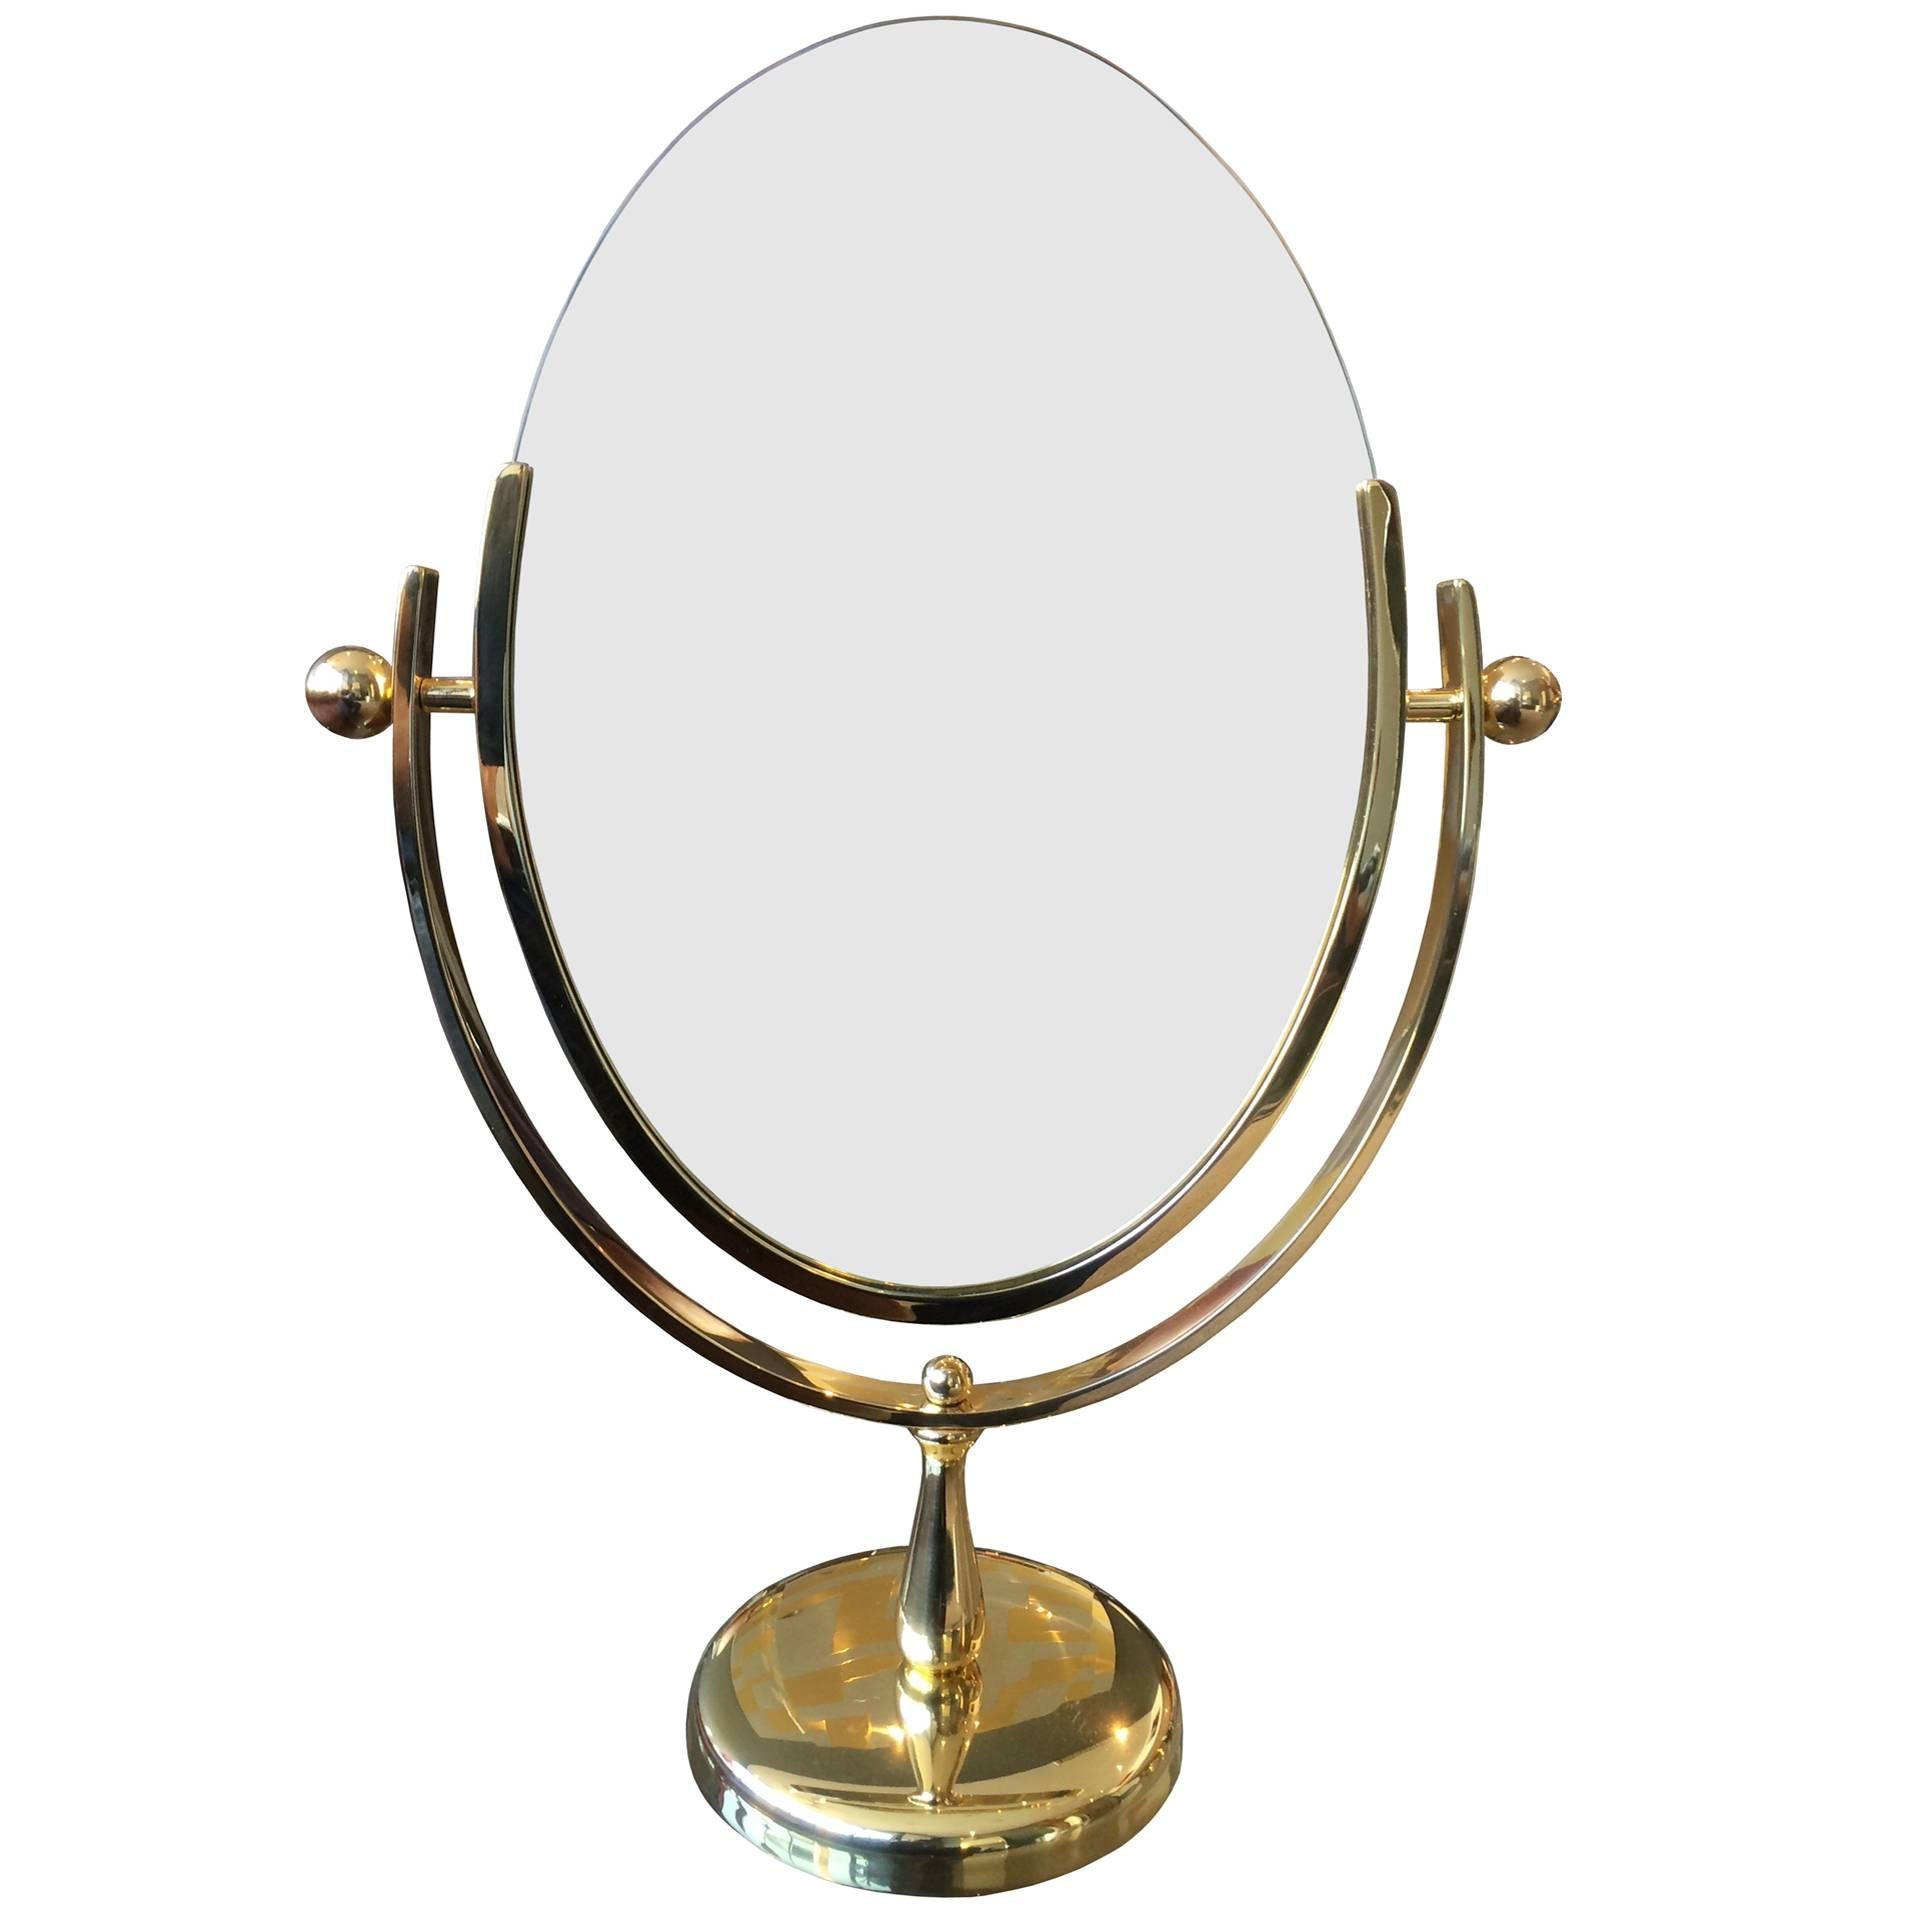  Charles Hollis Jones Vanity or Table Mirror in Polished Brass